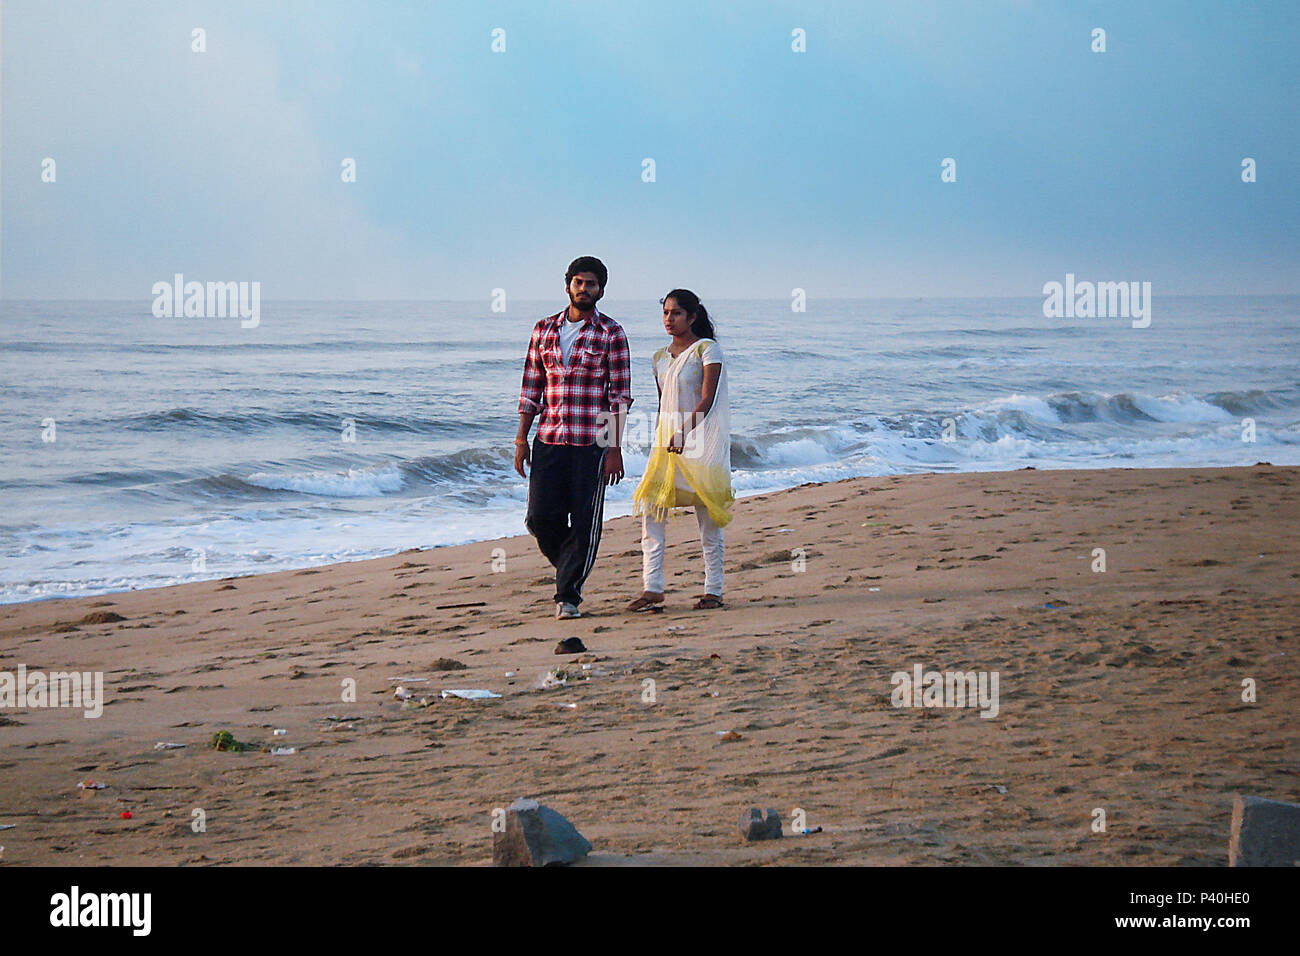 Gerne Romantische Paare Liebhaber Zu Fuss Am Strand Stockfotografie Alamy